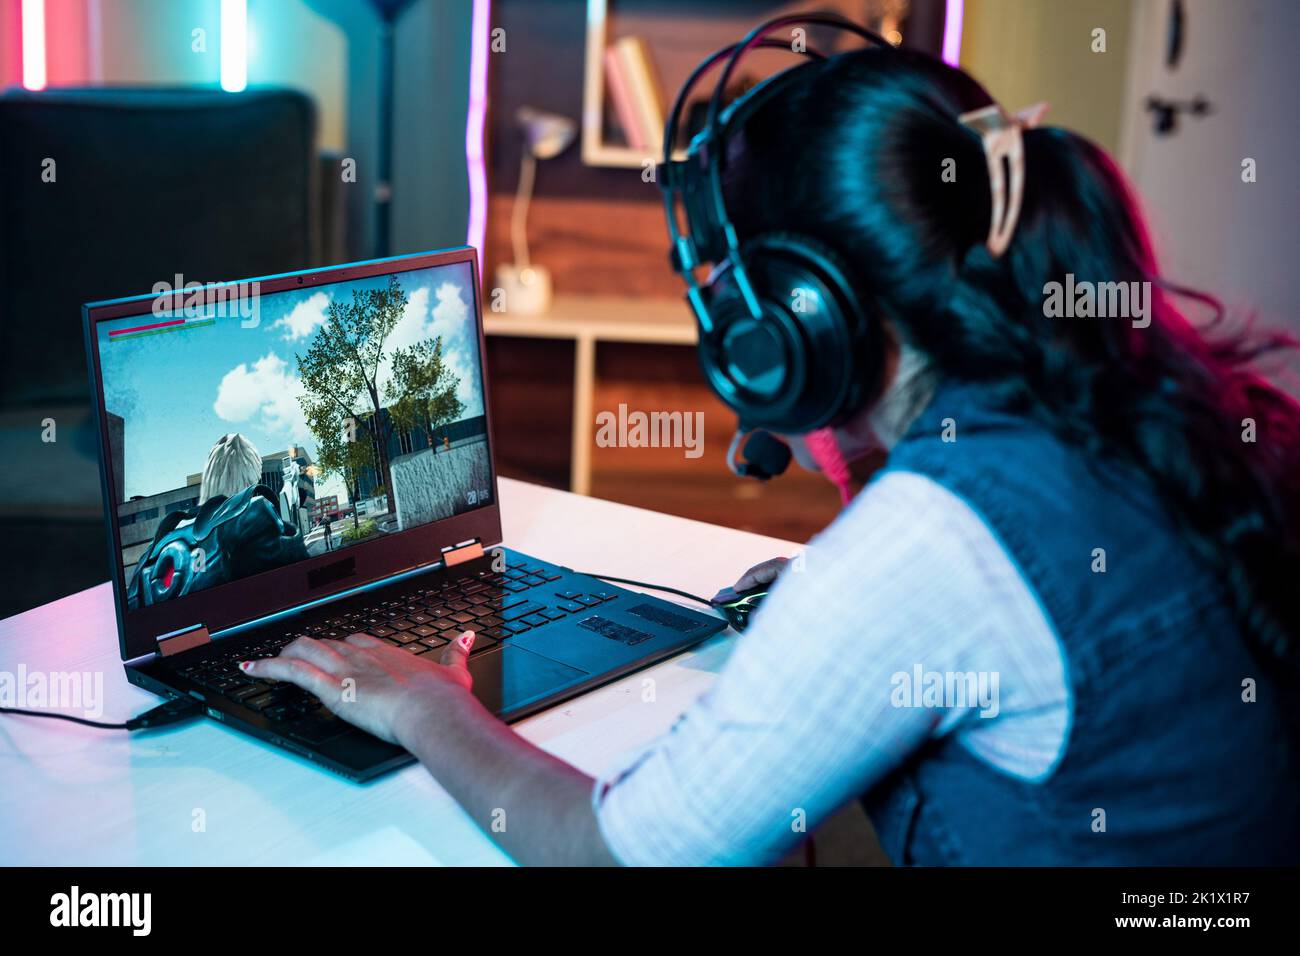 Hombro de mujer con auriculares jugando videojuegos en línea en el portátil en casa - concepto de transmisión en directo, la competencia y la tecnología. Foto de stock